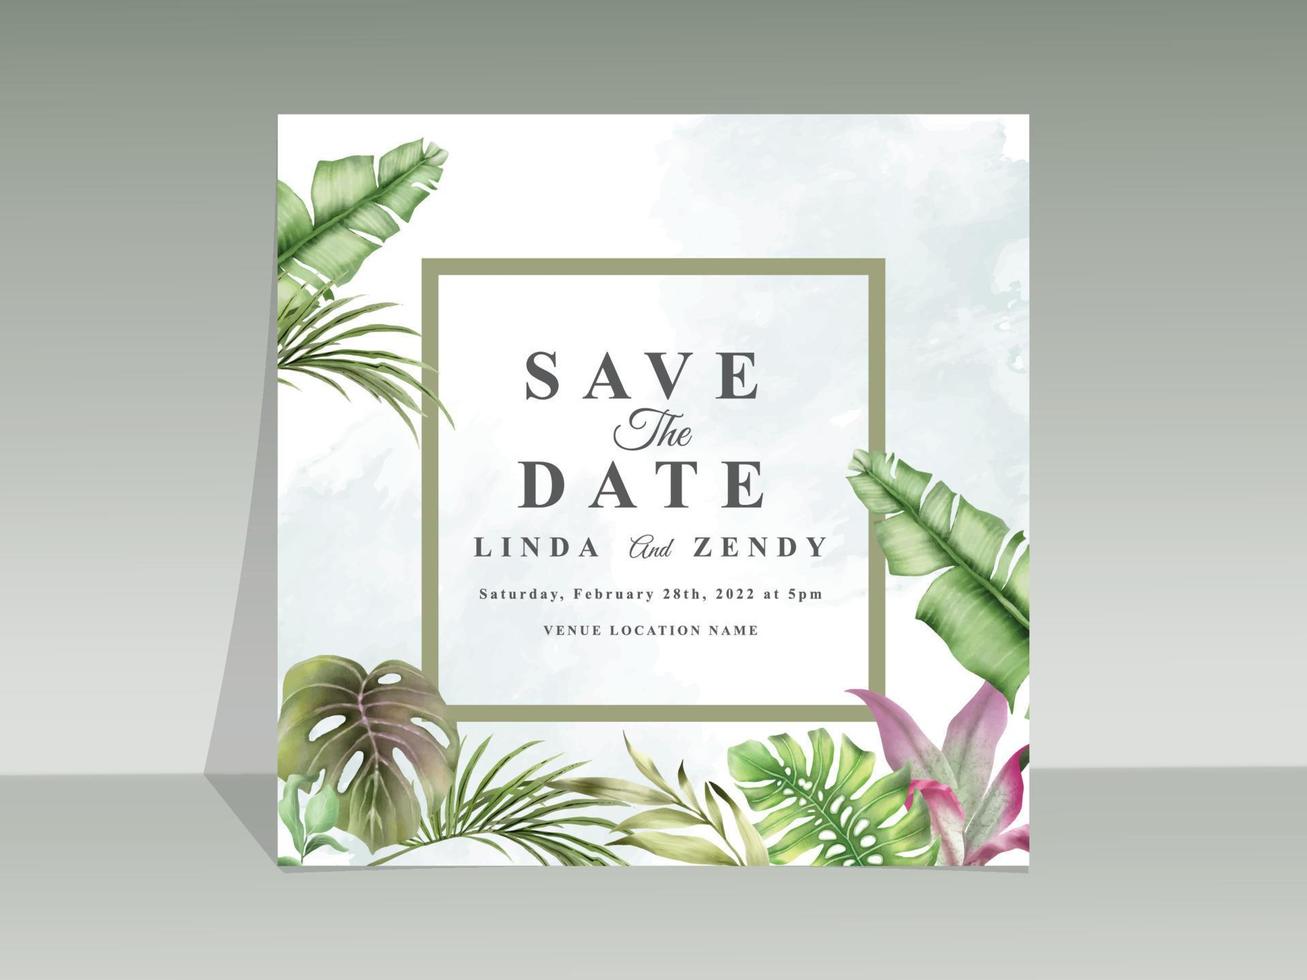 modelo de cartão de convite de casamento em aquarela floral tropical elegante vetor